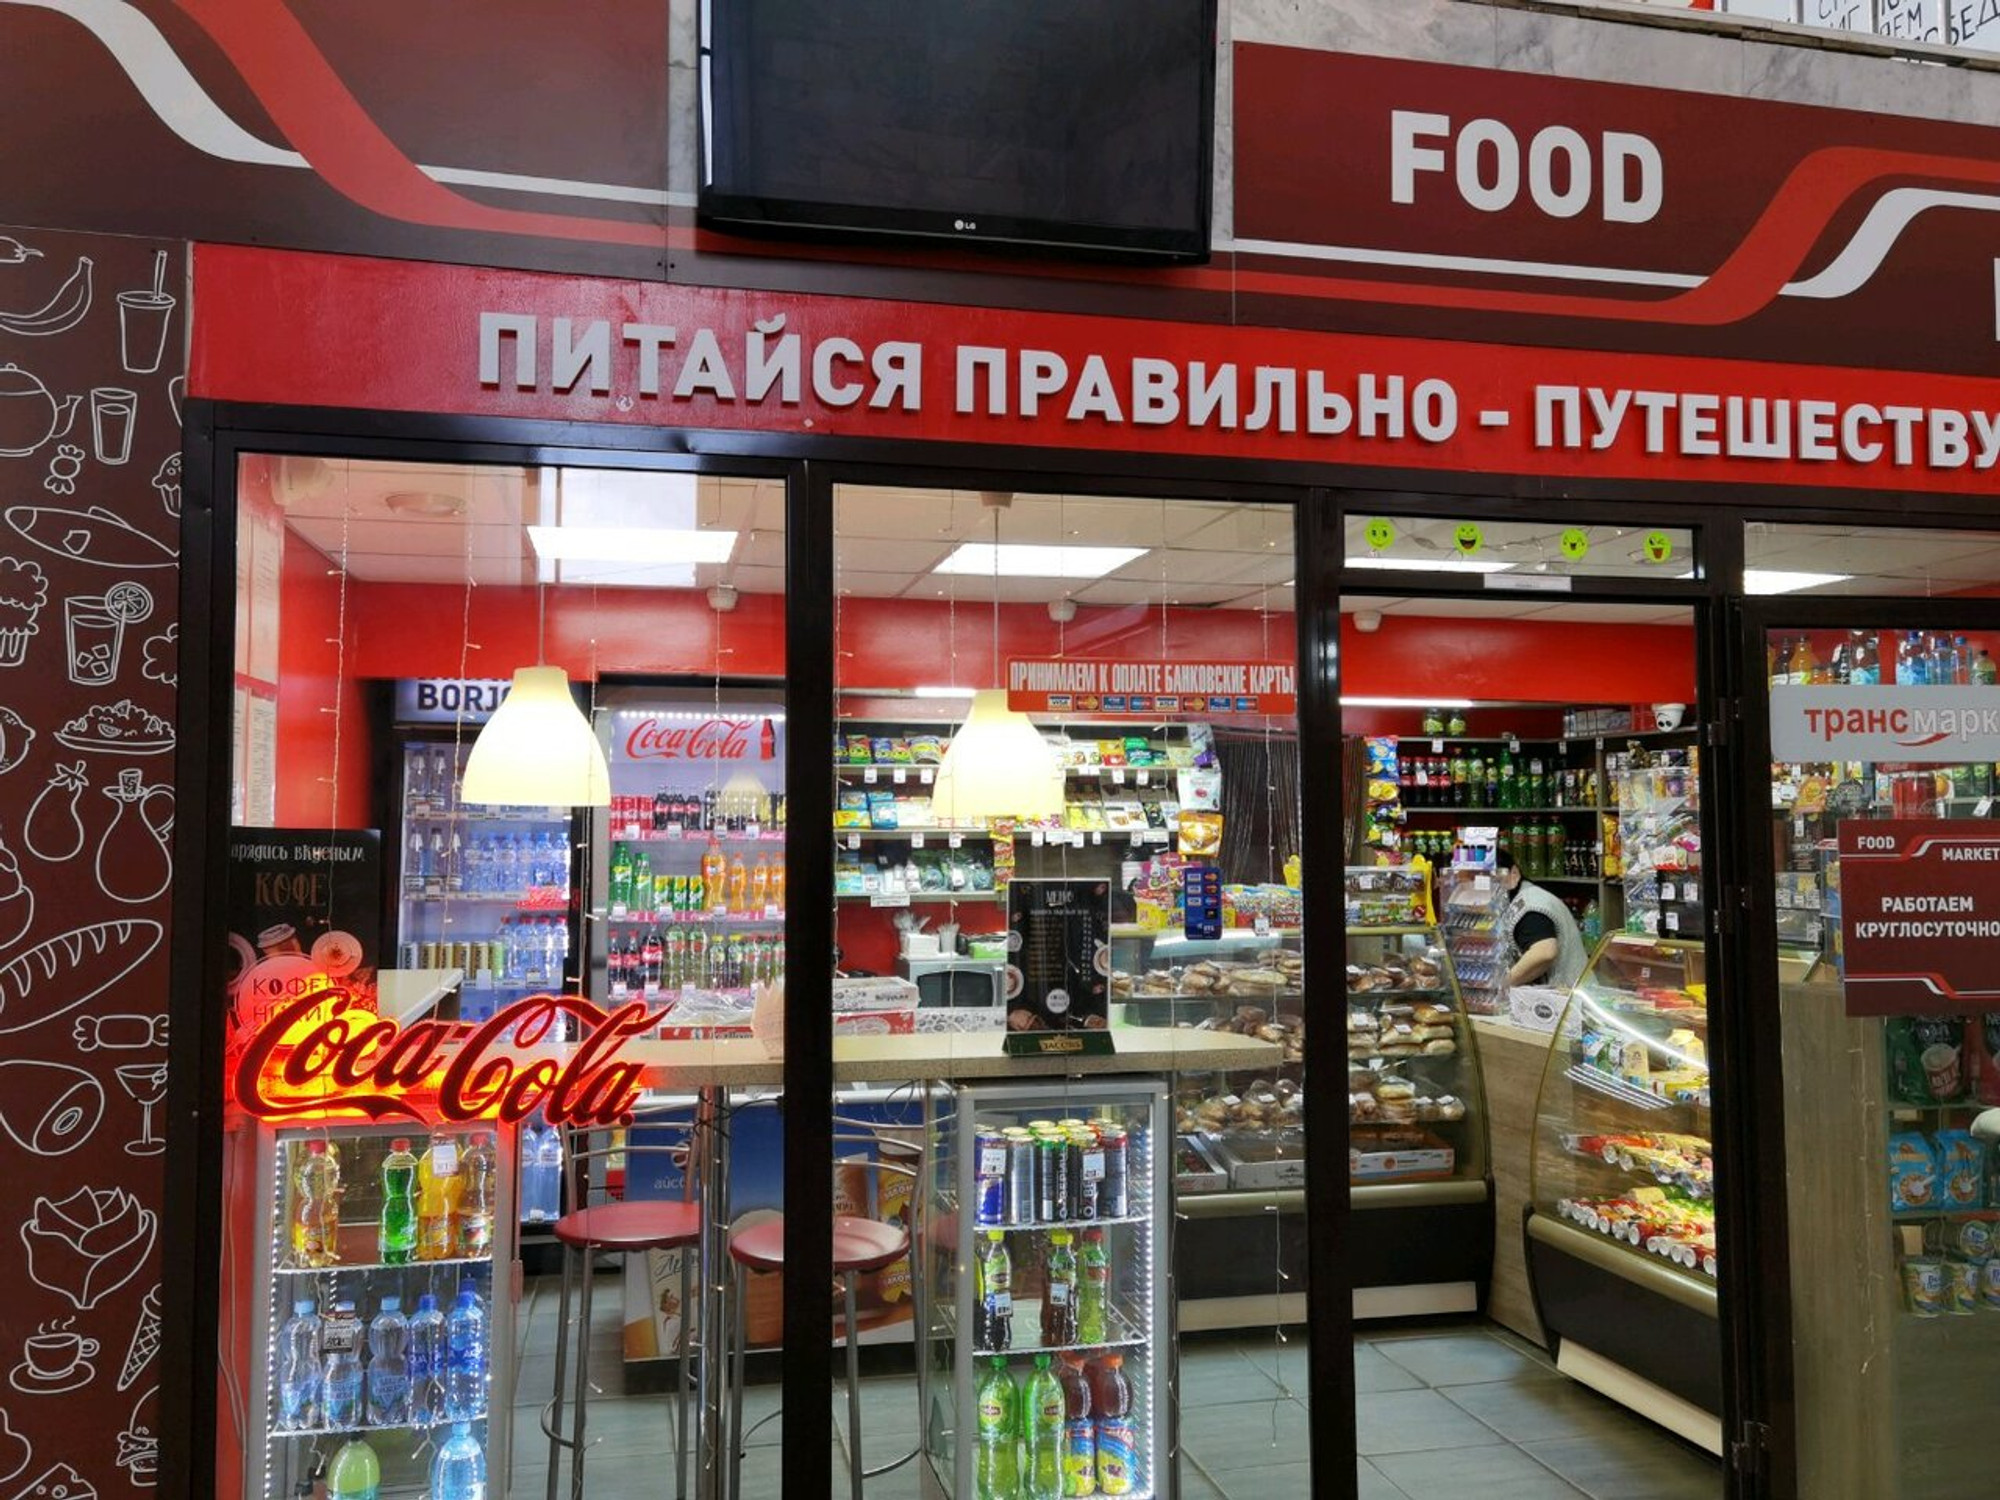 Food Market, кафе европейской и русской кухни